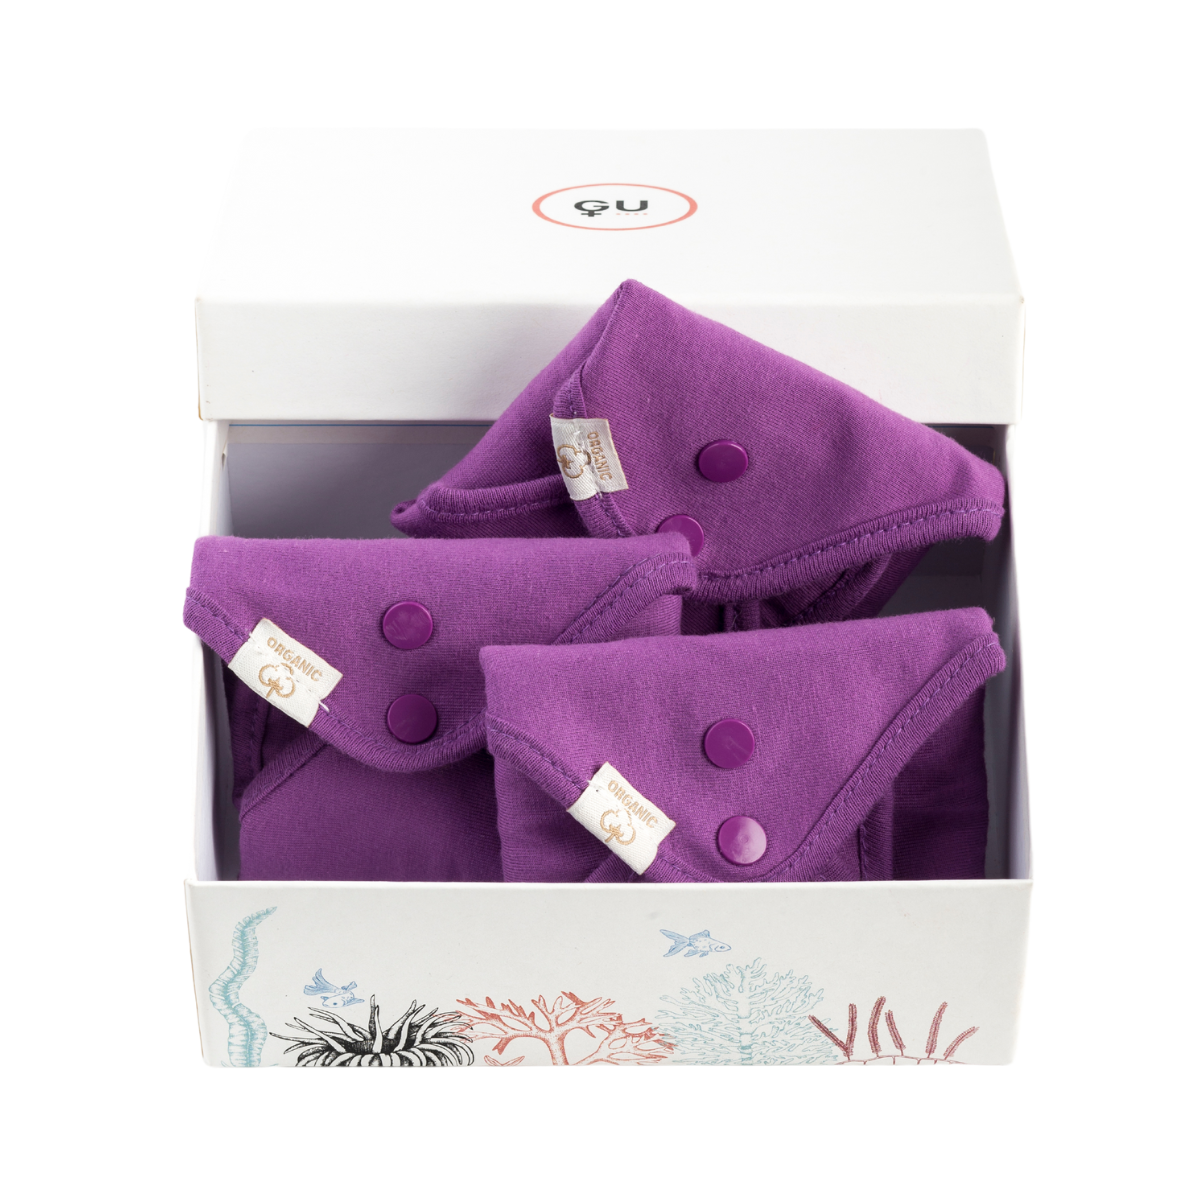 Pack textil menstrual reutilizable con compresas día, noche y slip